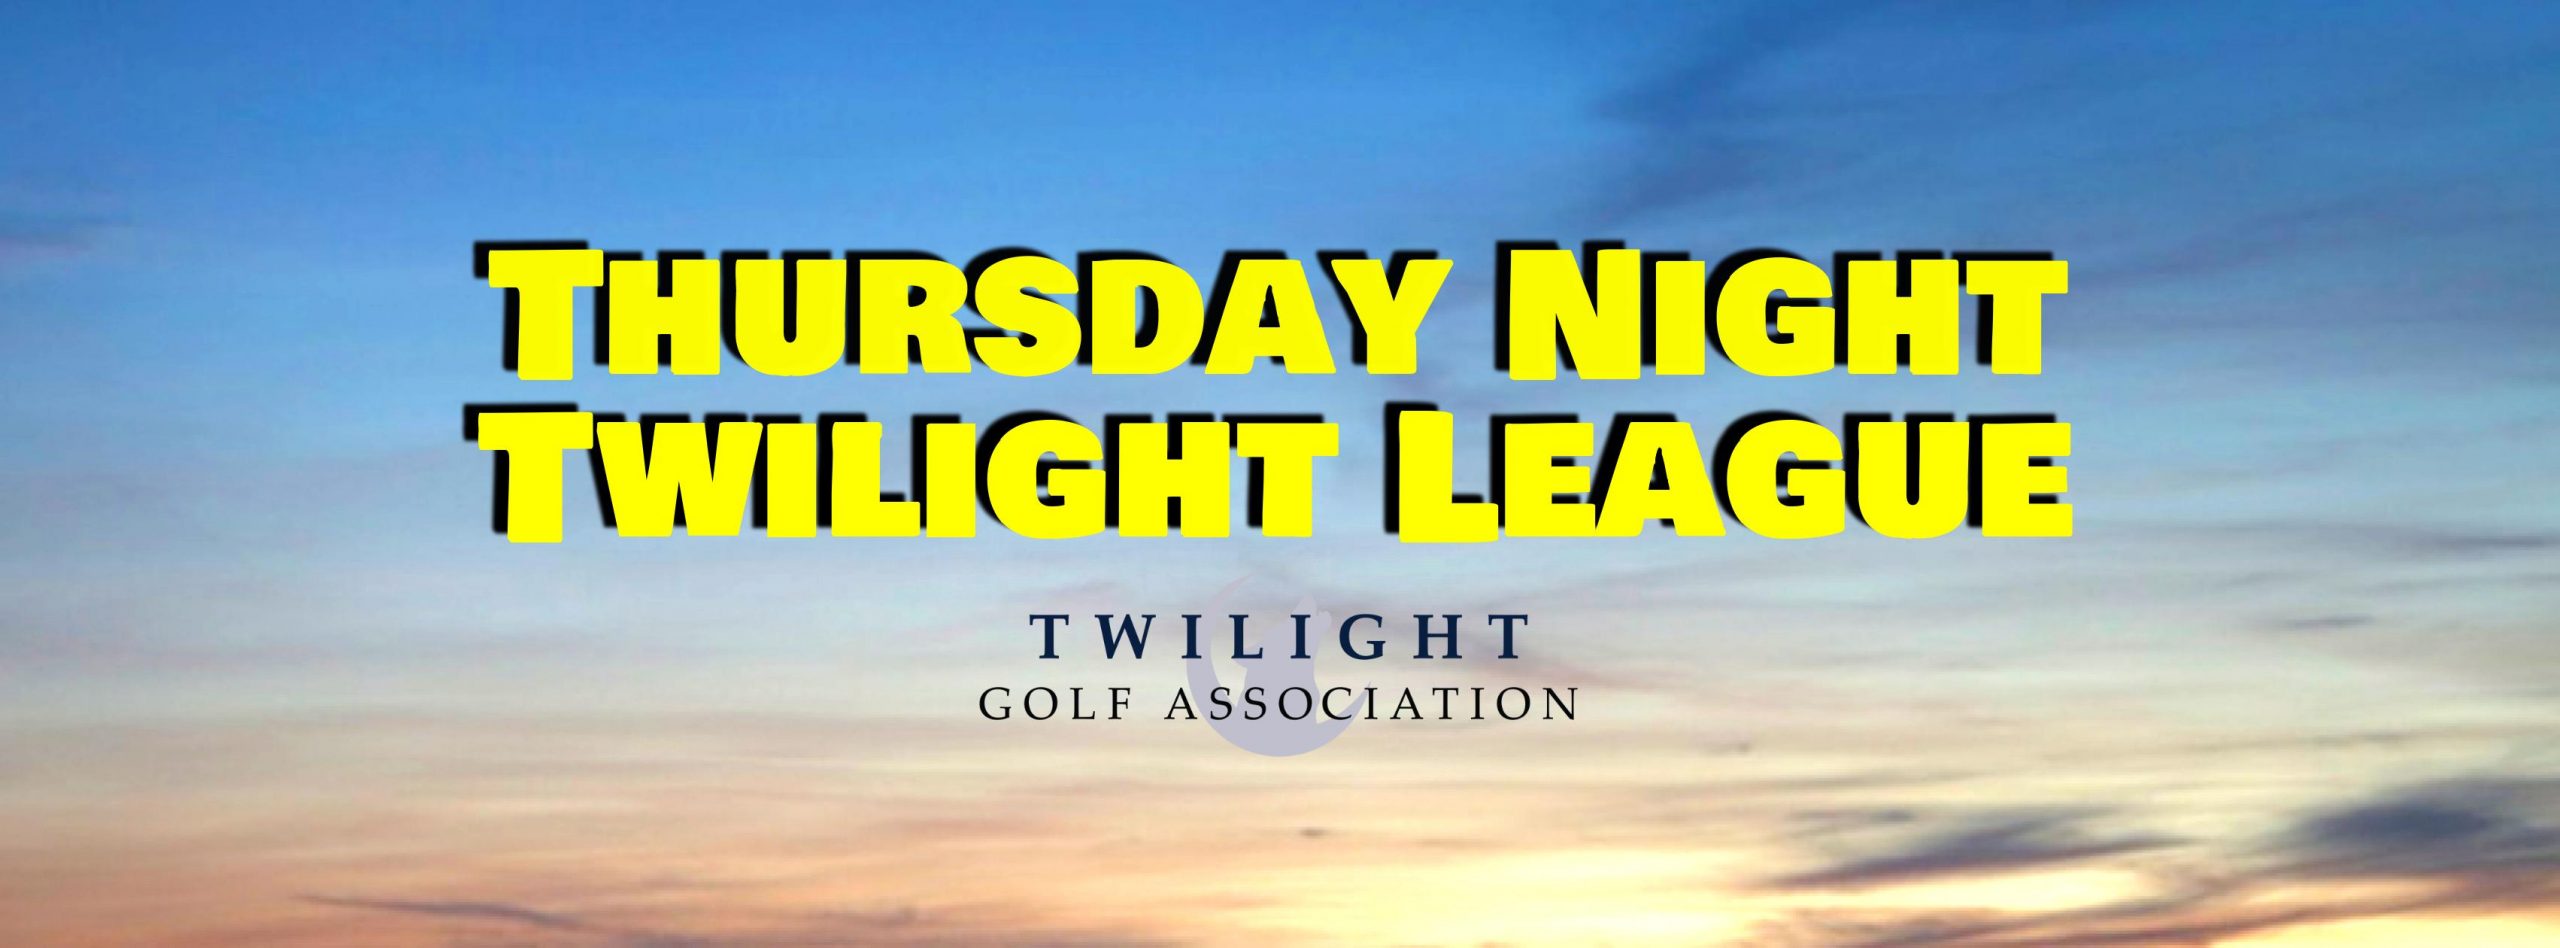 Thursday Twilight League at Mount Pleasant Golf Course